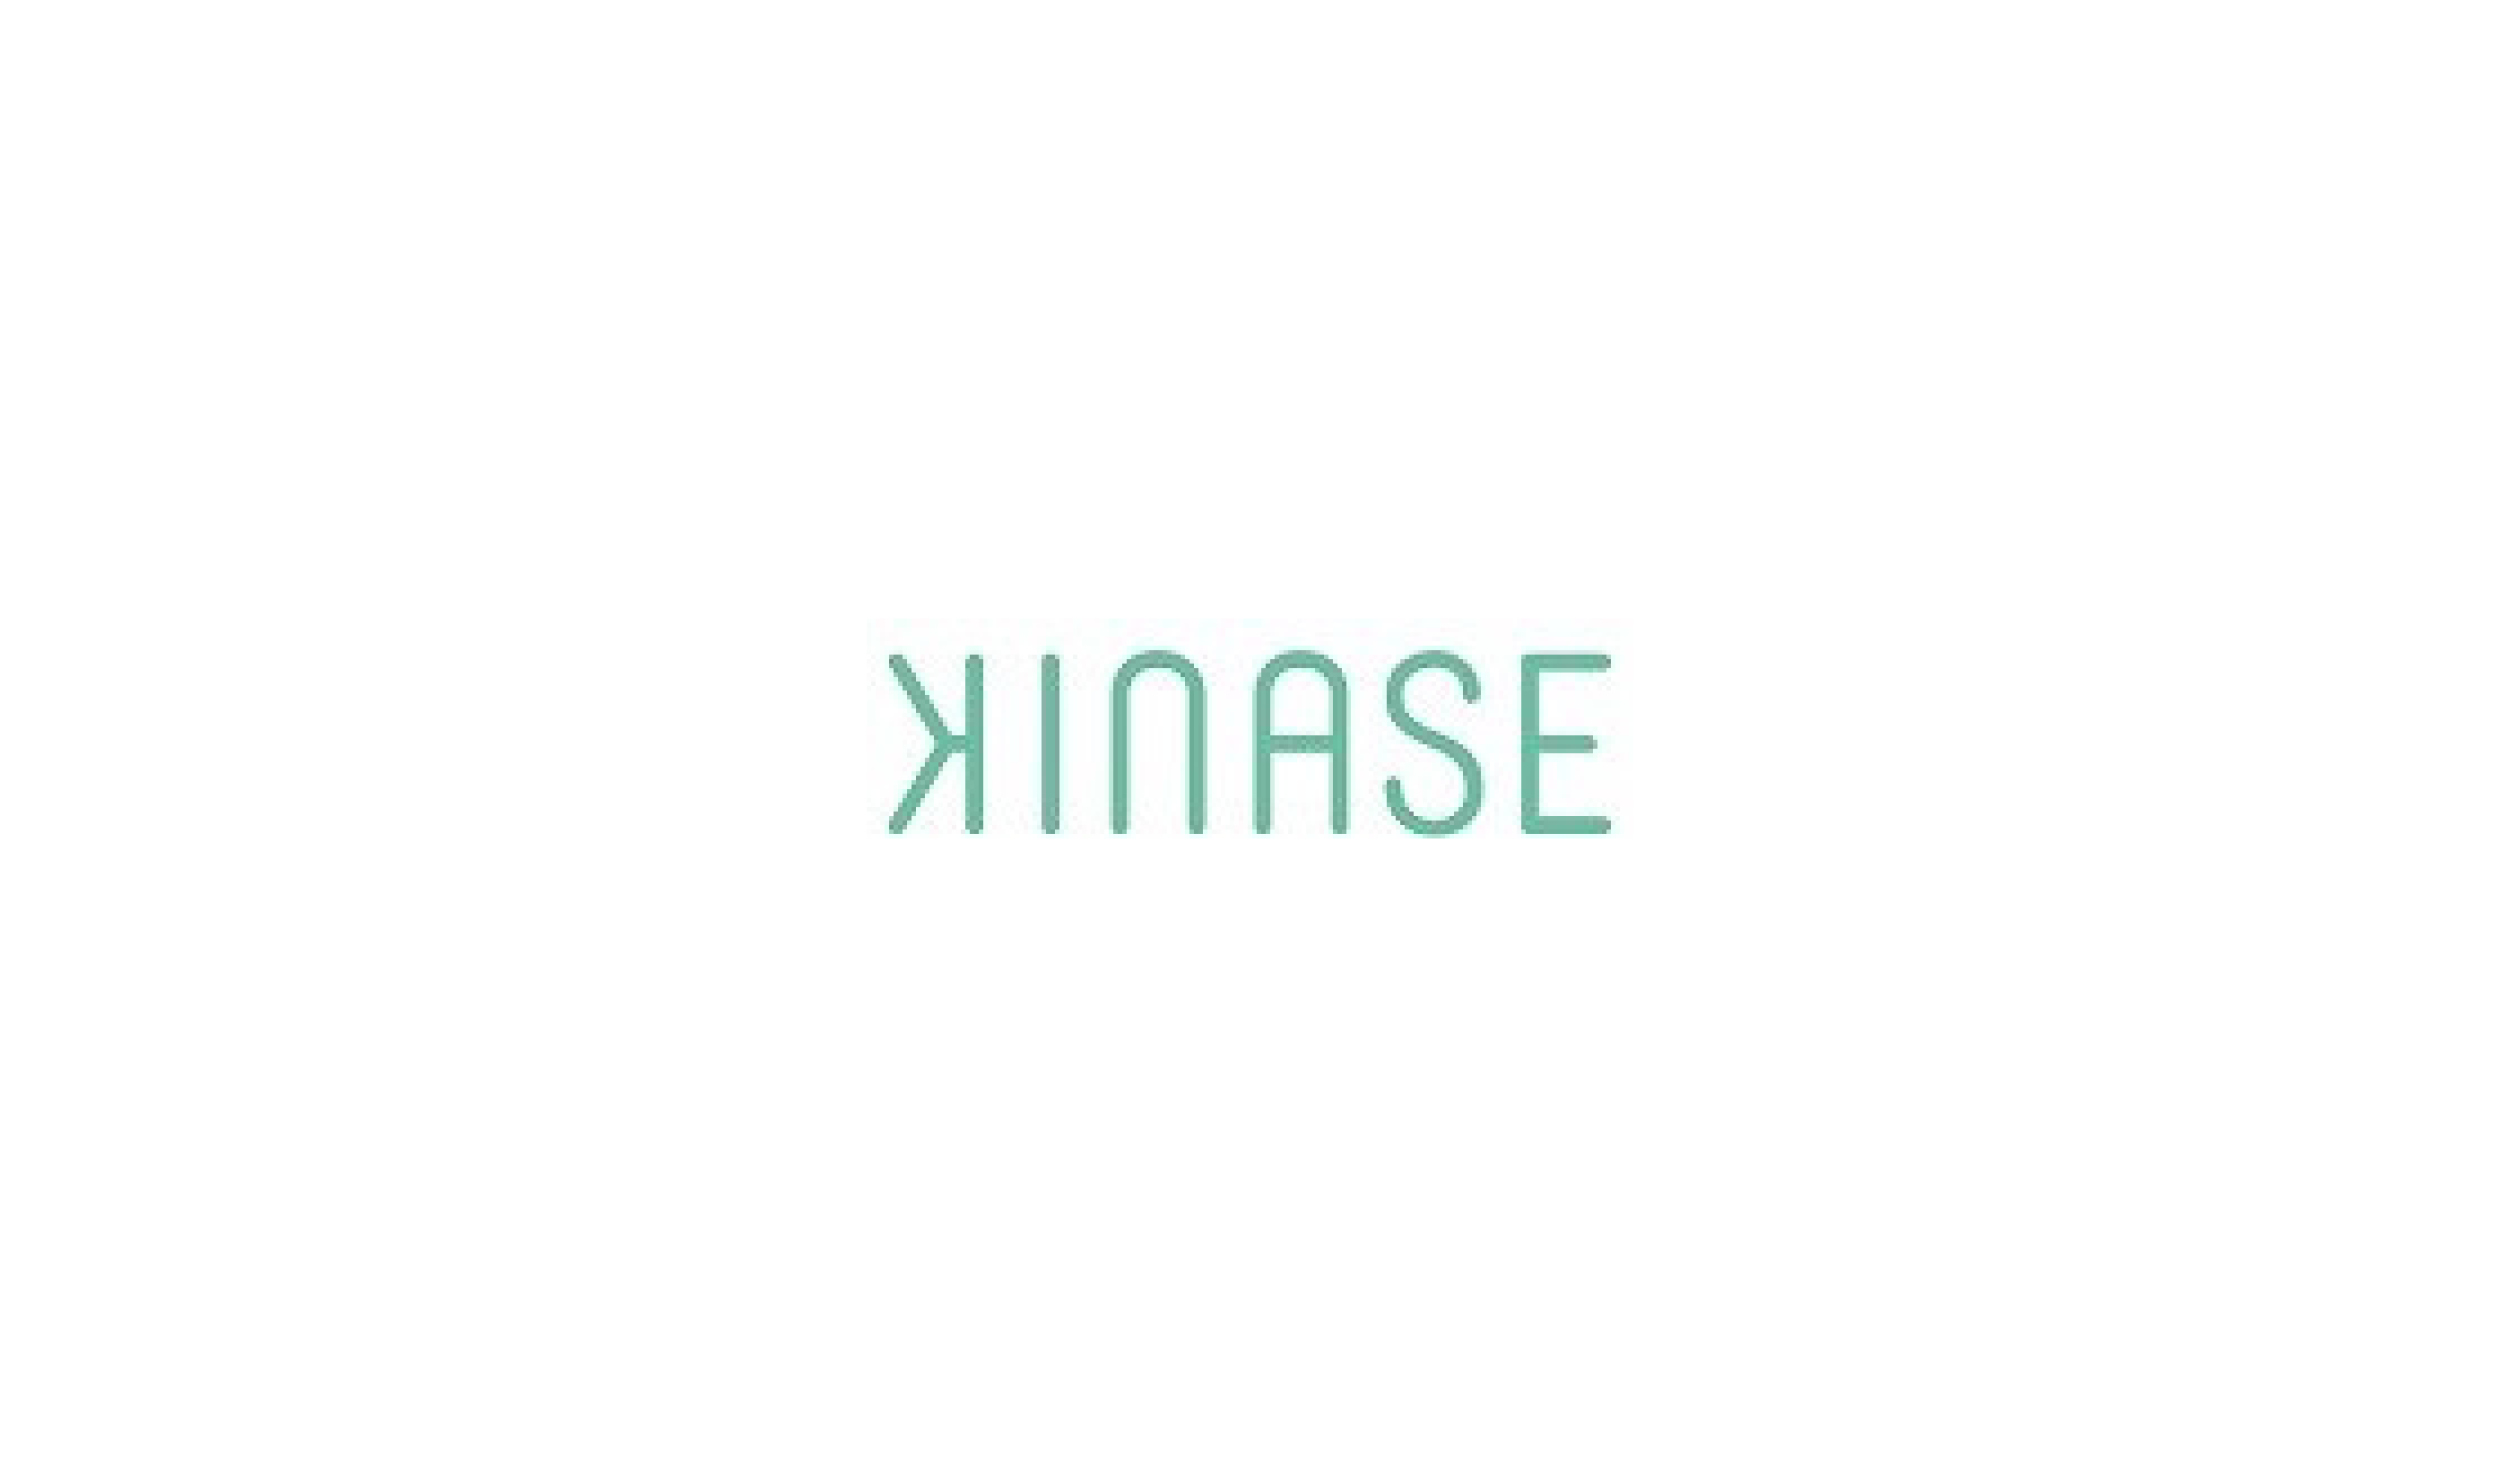 Kinase logo